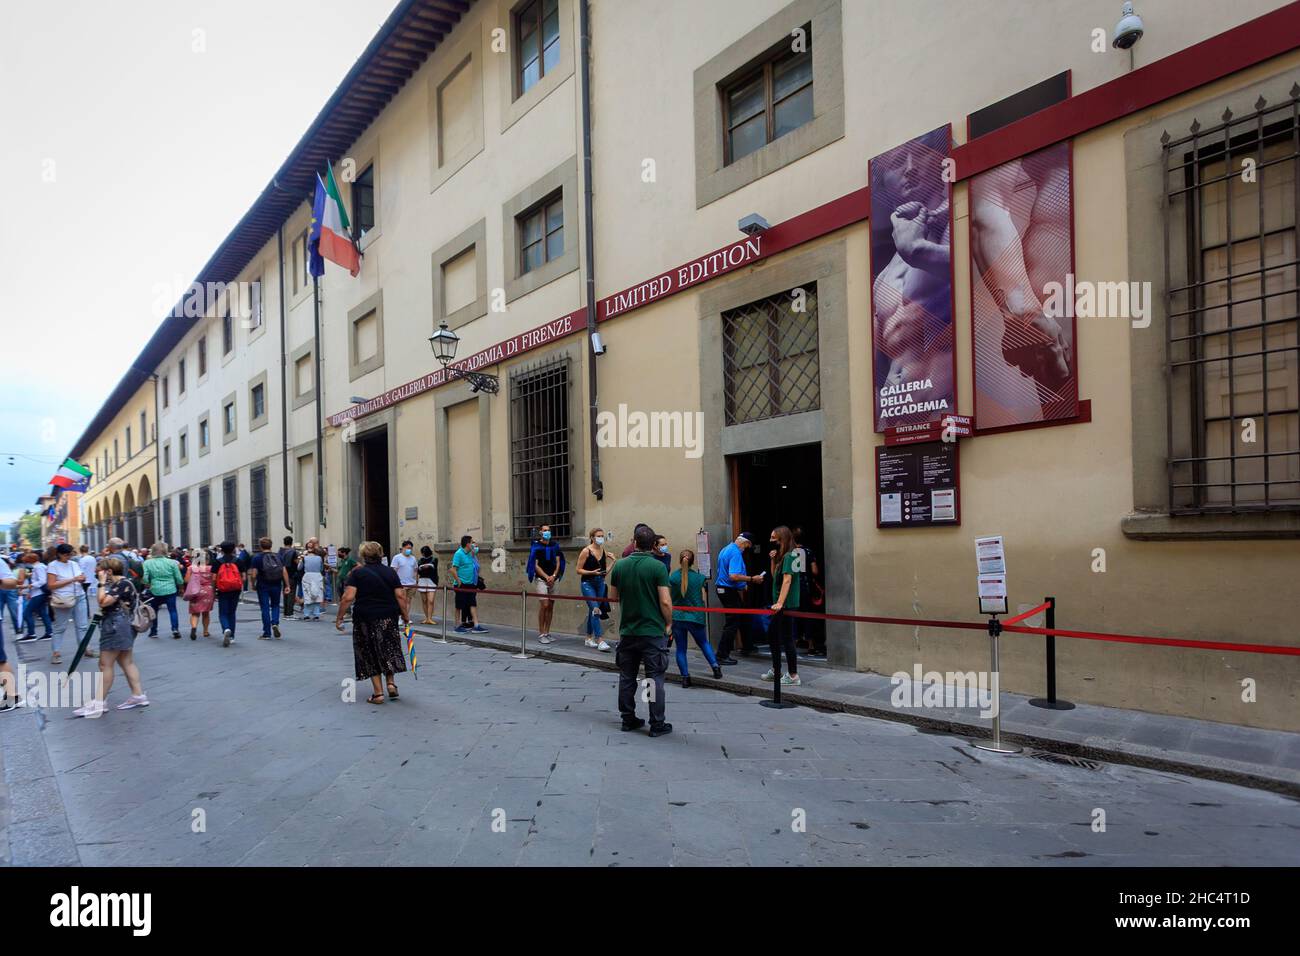 Galleria della Accademia. Florence. Italy.. Stock Photo